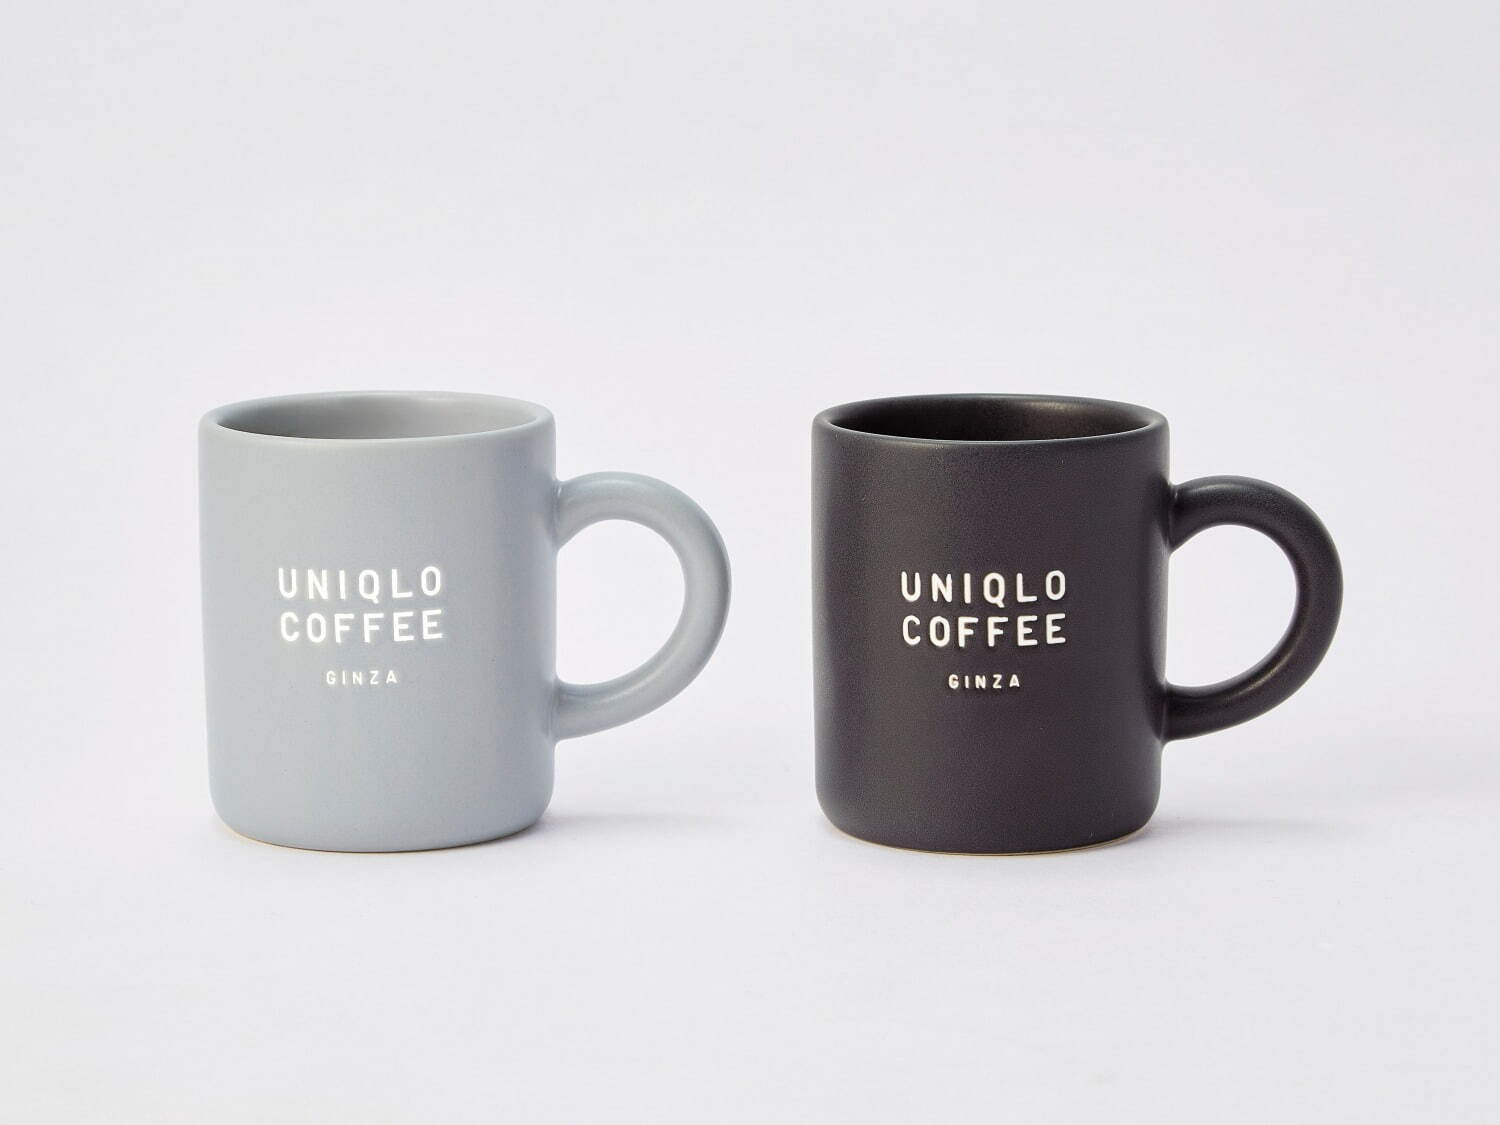 Uniqlo Coffee UNIQLO Ginza 2